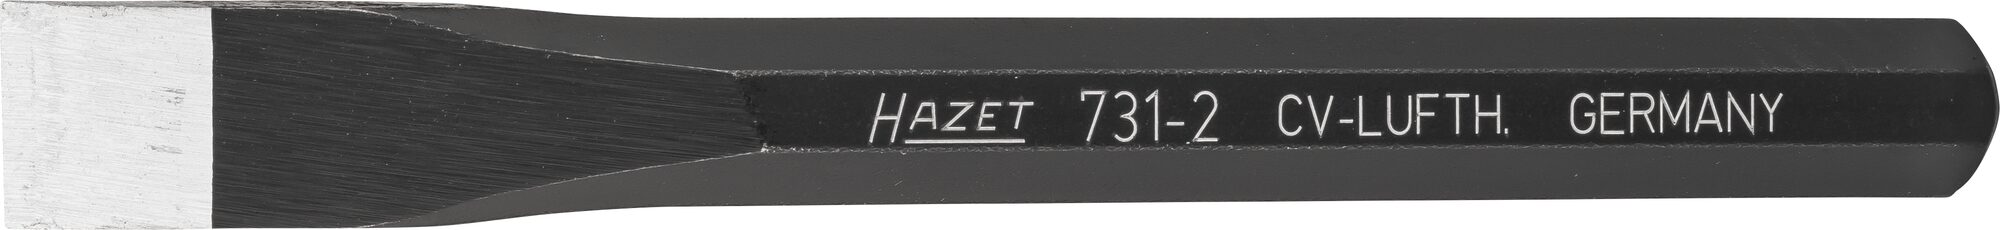 HAZET Flachmeißel 731-2 · 11 mm